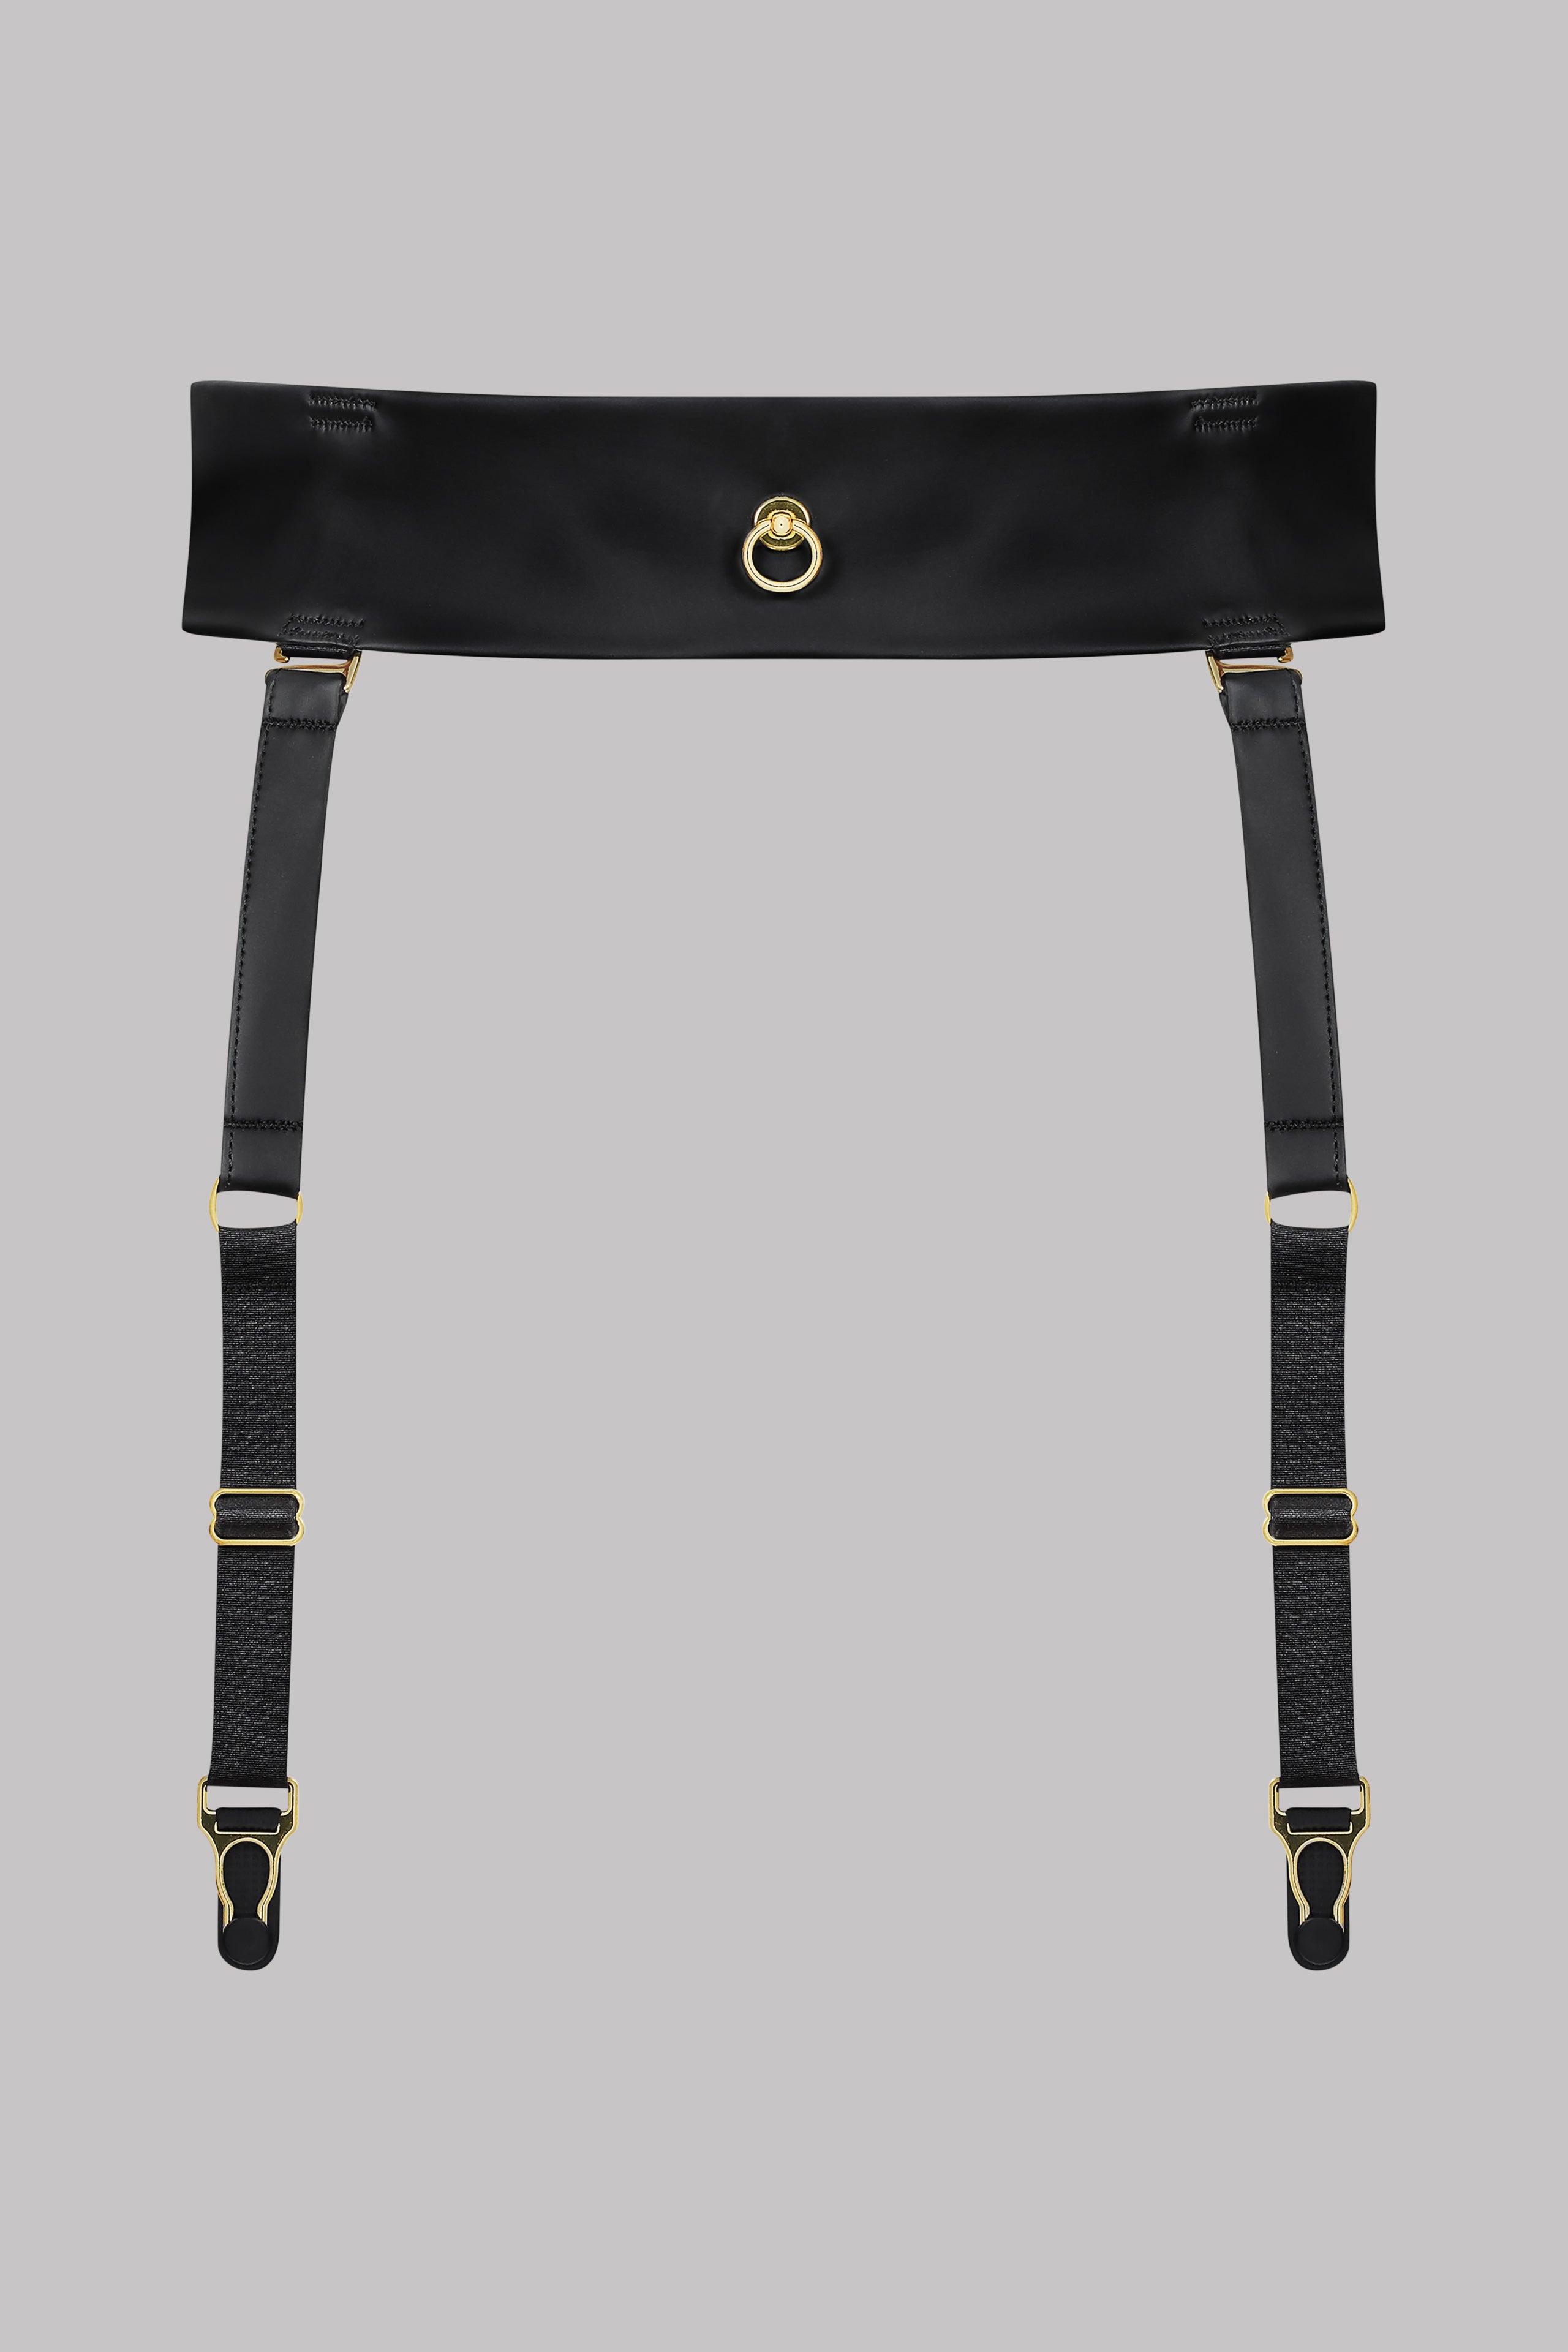 Suspender Belt - Chambre Noire Limited Edition